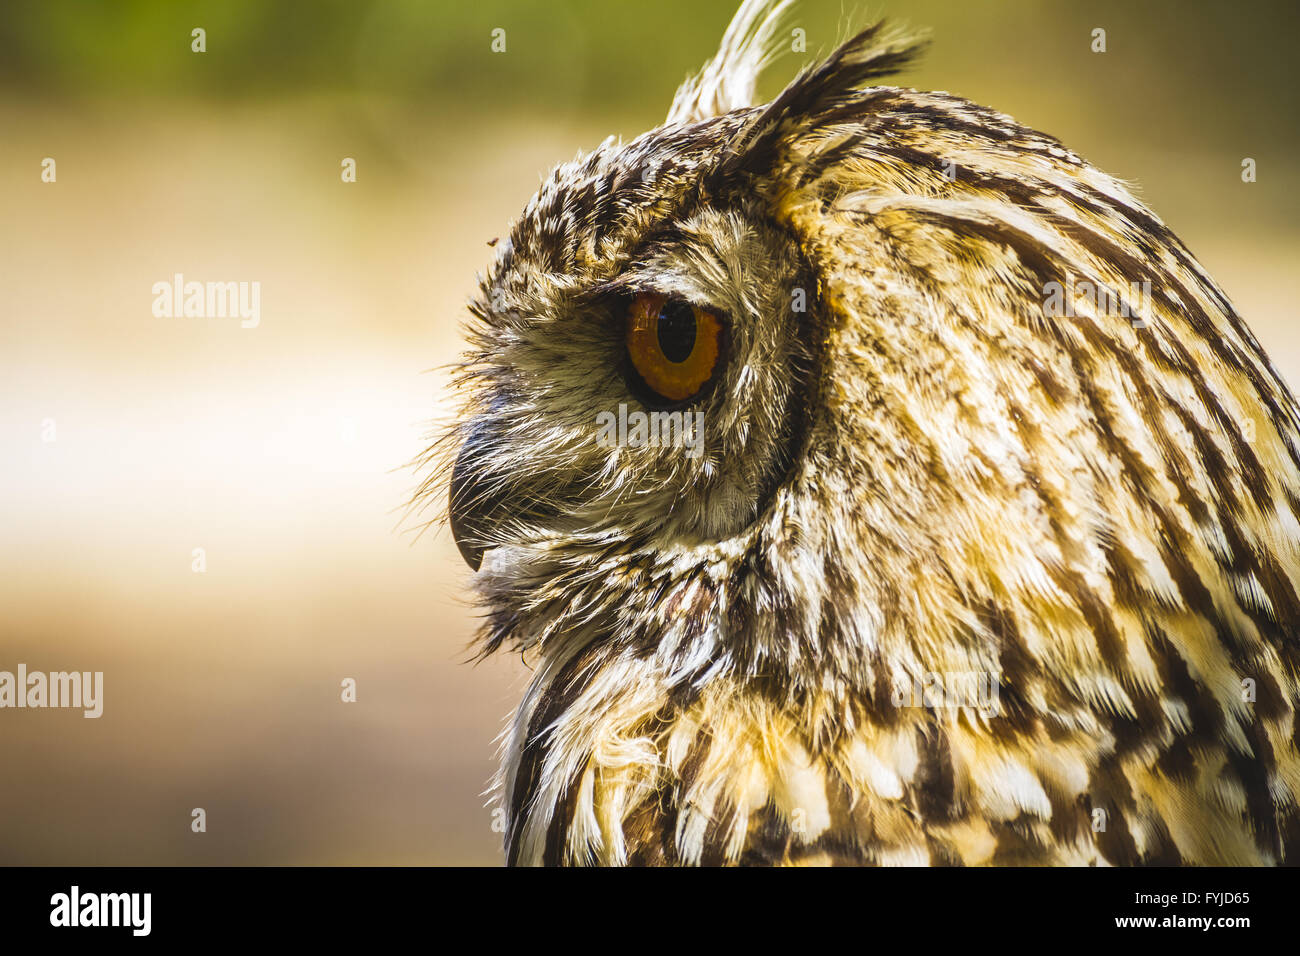 Guarda, bella owl con occhi intensi e uno splendido piumaggio Foto Stock